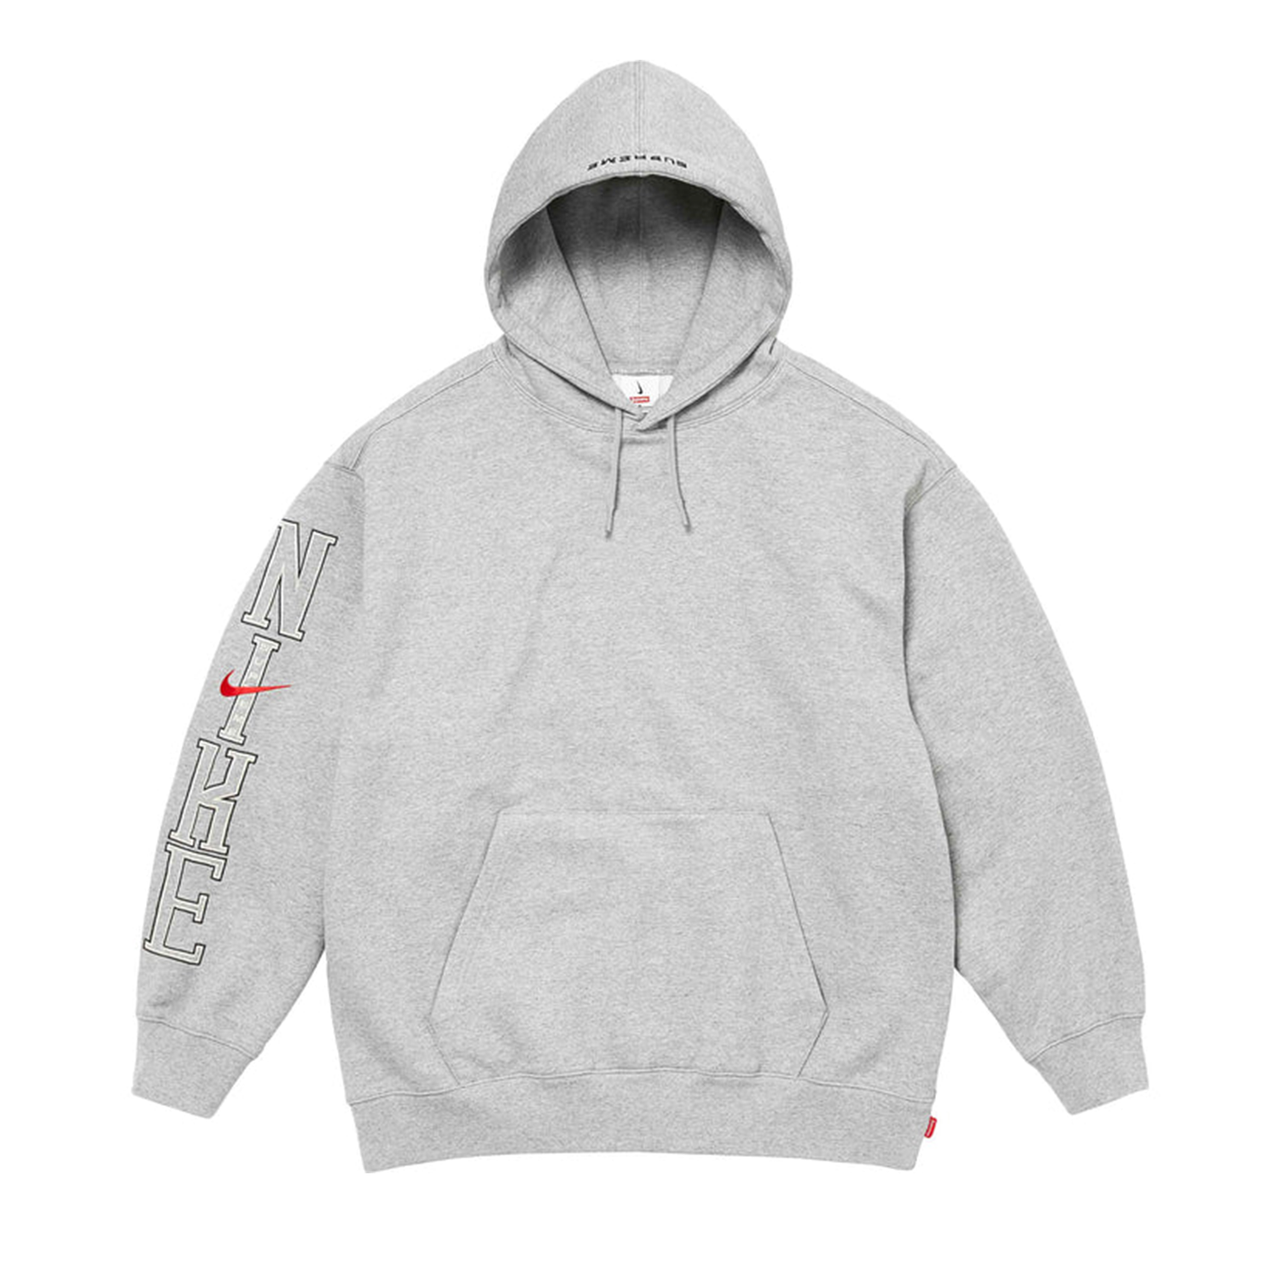 Supreme x Nike Hooded Sweatshirt Grey